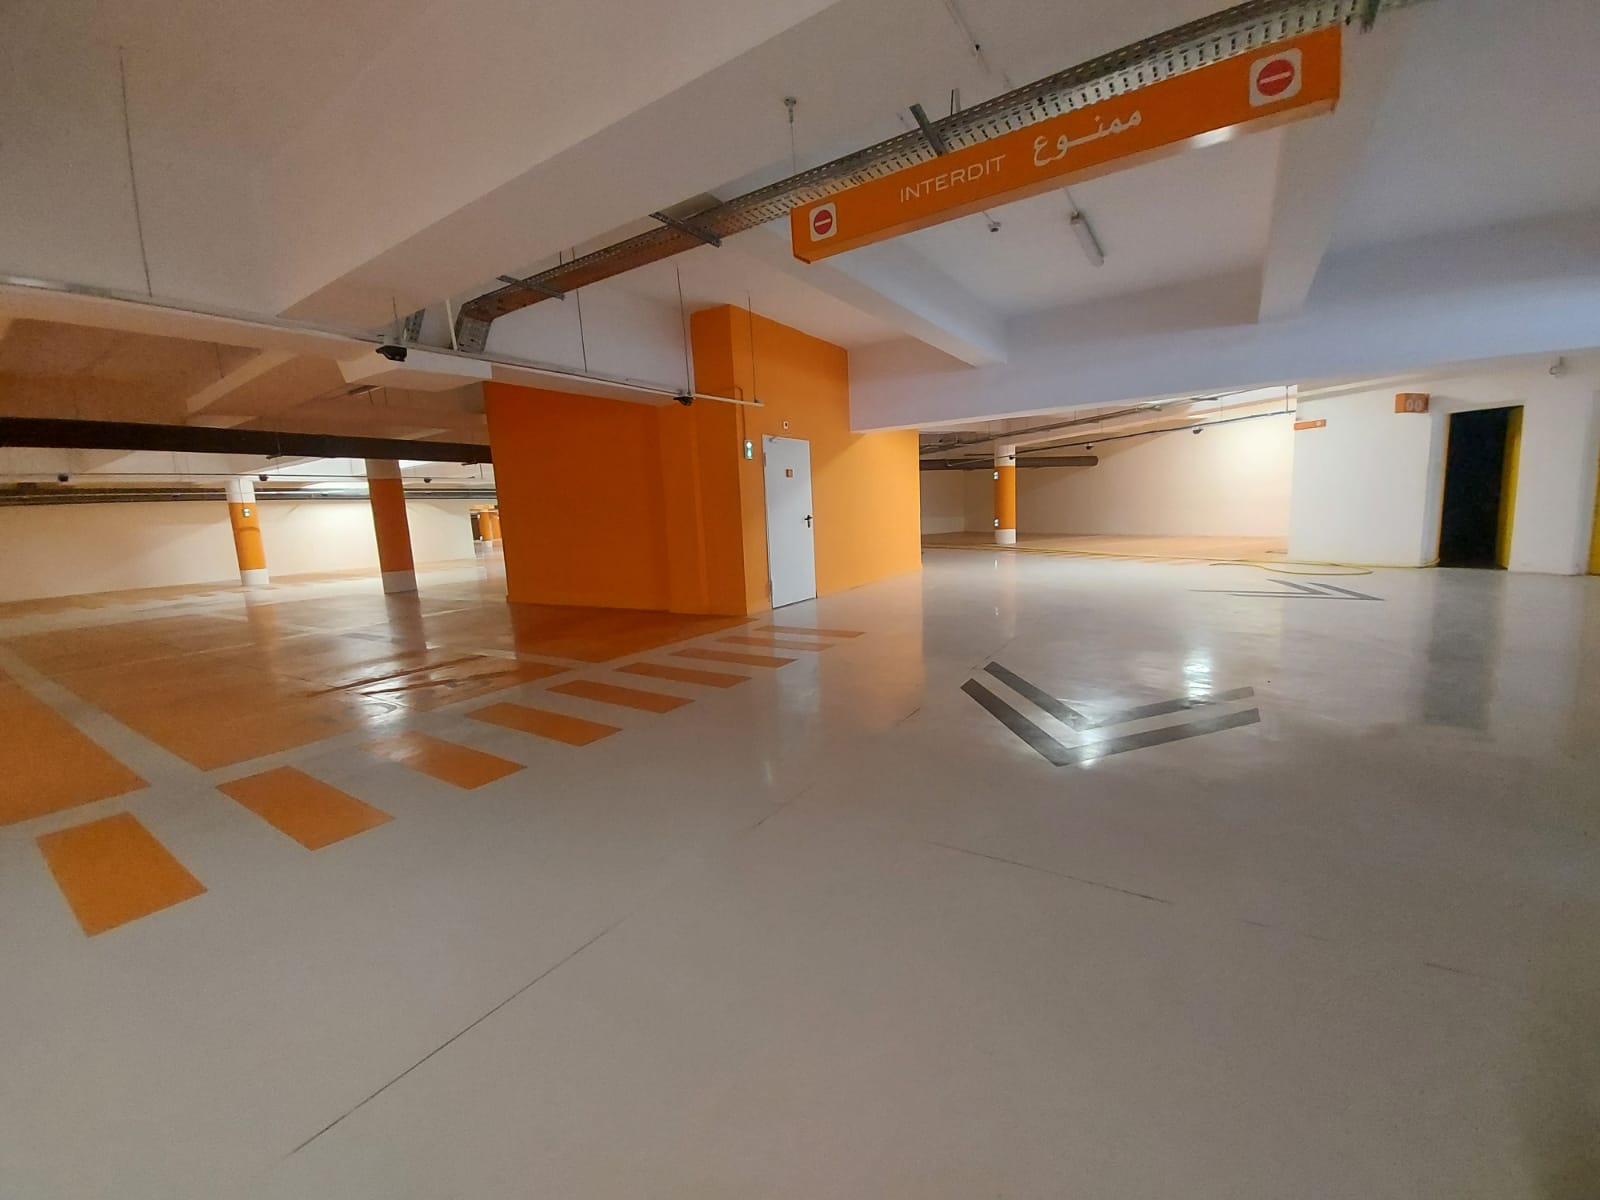 Le Parking souterrain Bab El Had ouvrira ses portes à partir du vendredi 27 mai